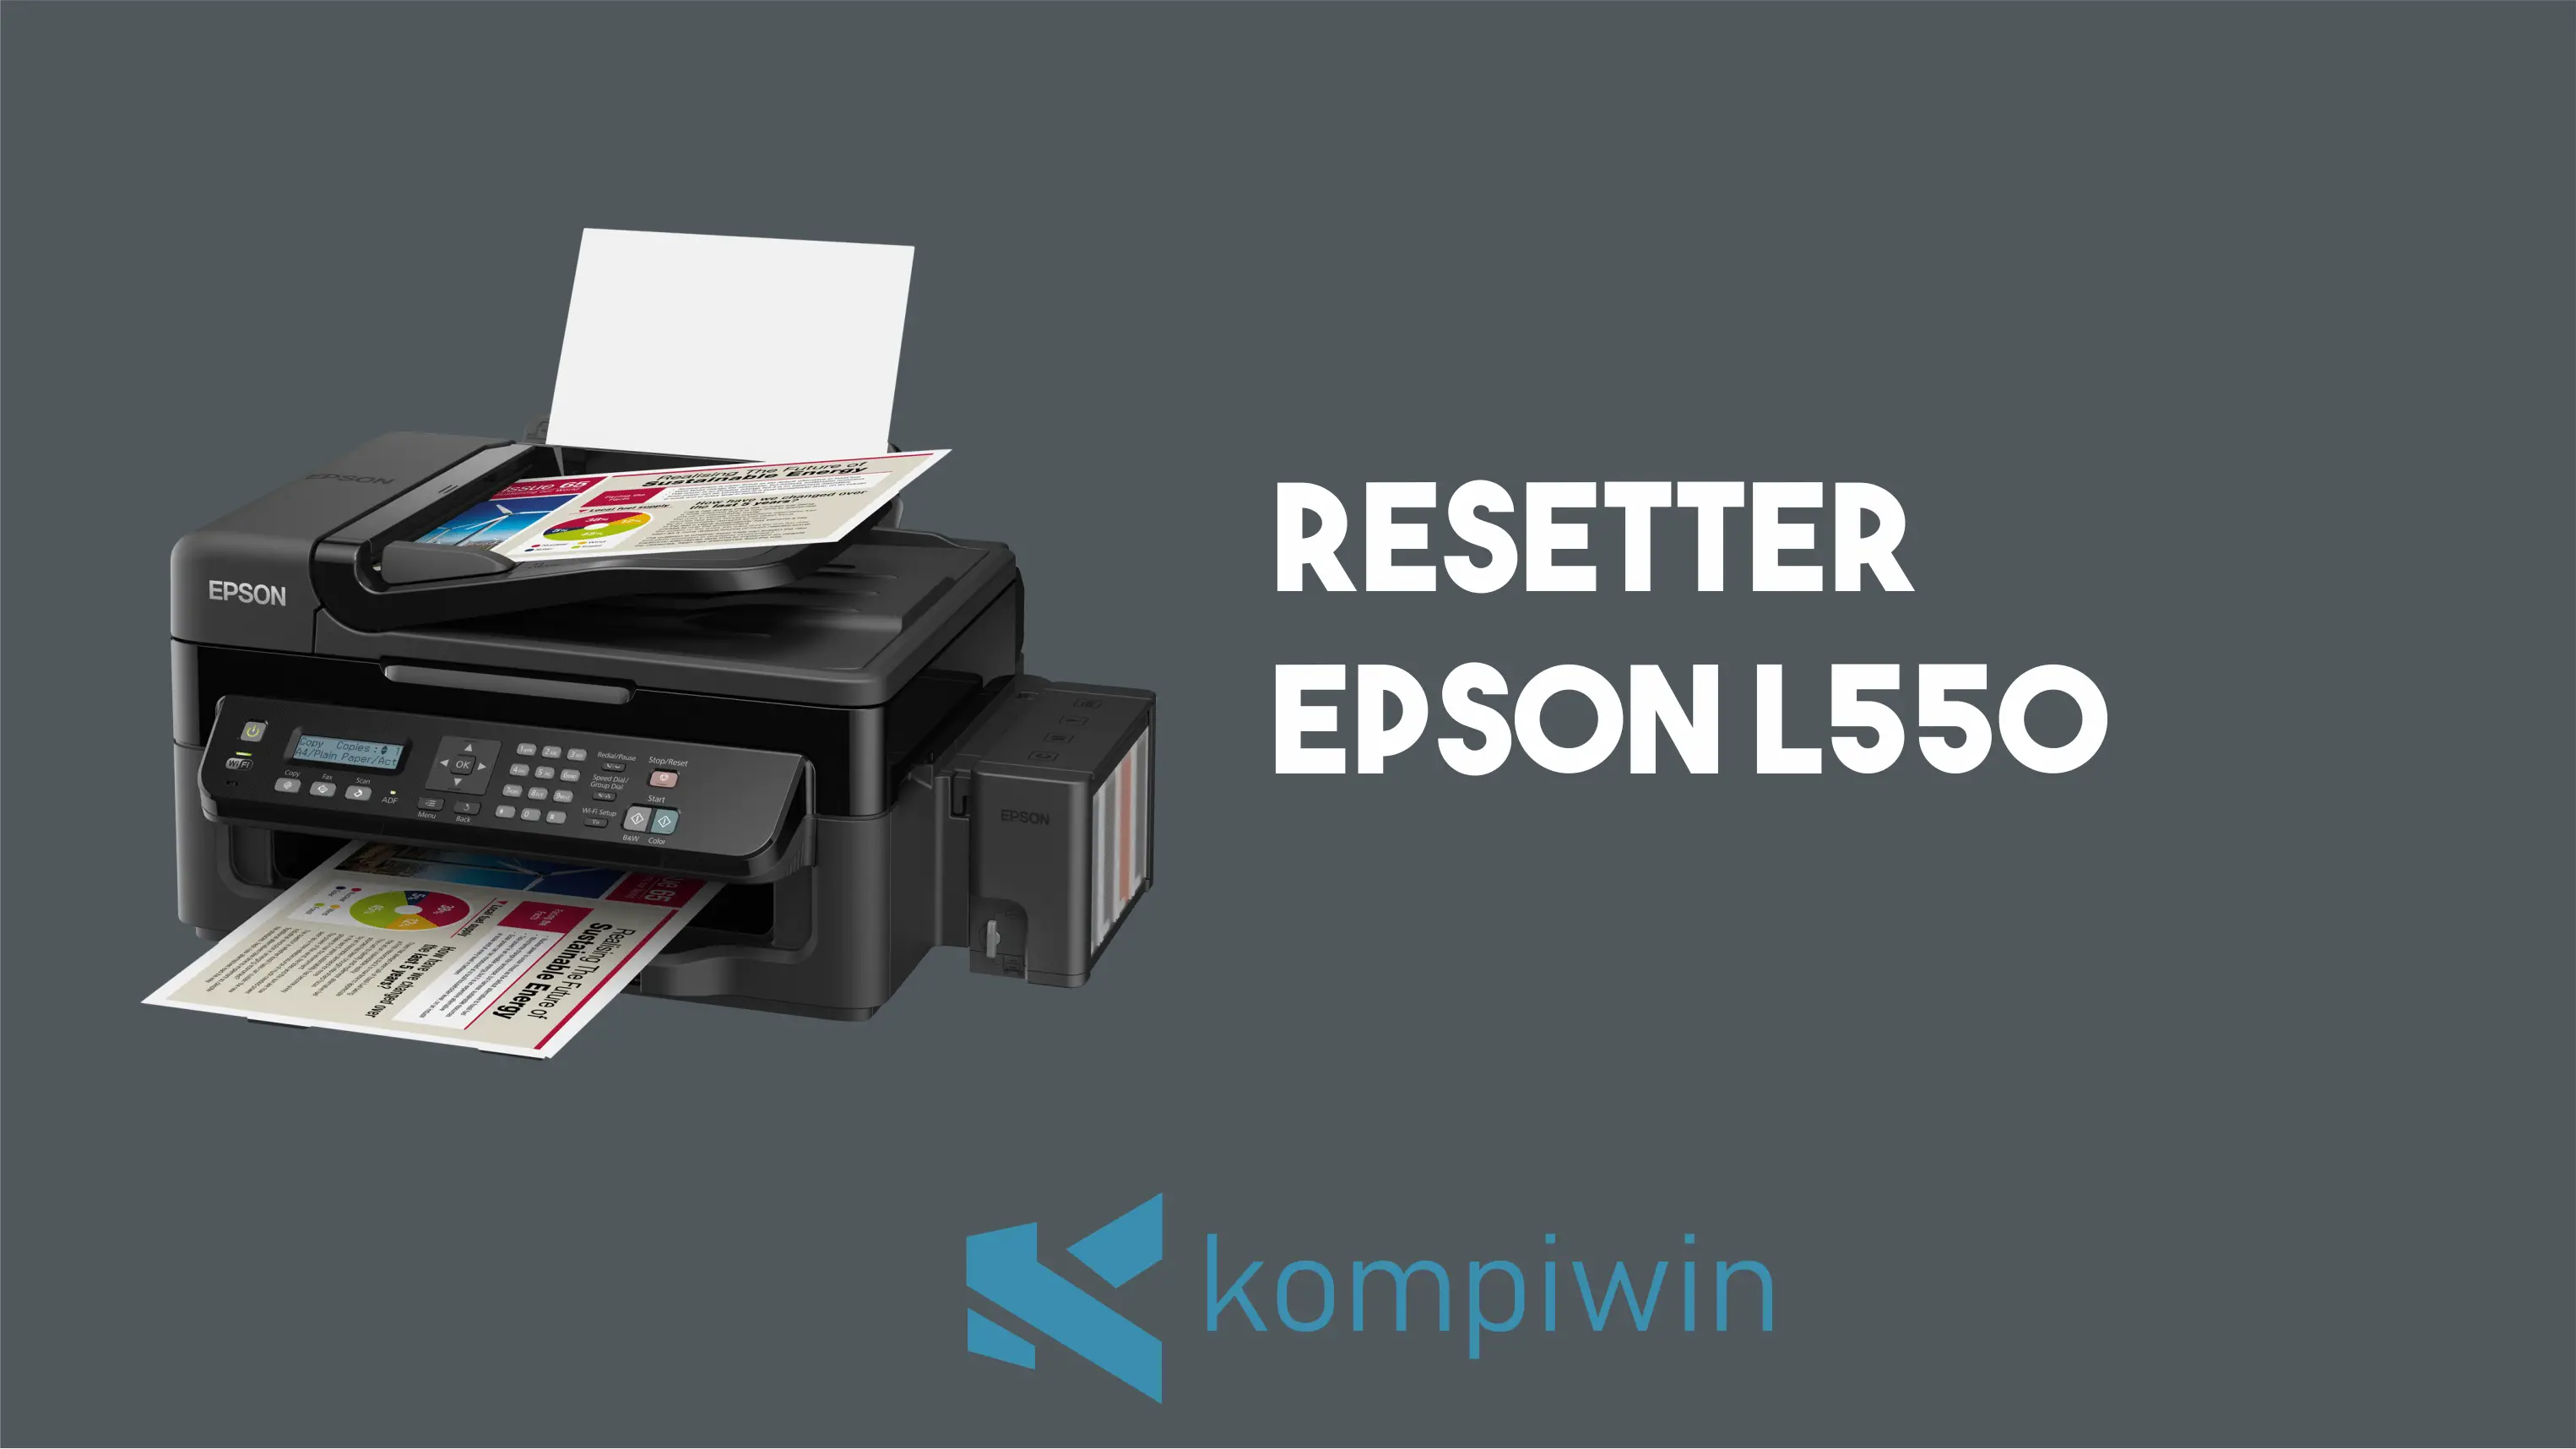 Resetter Epson L550